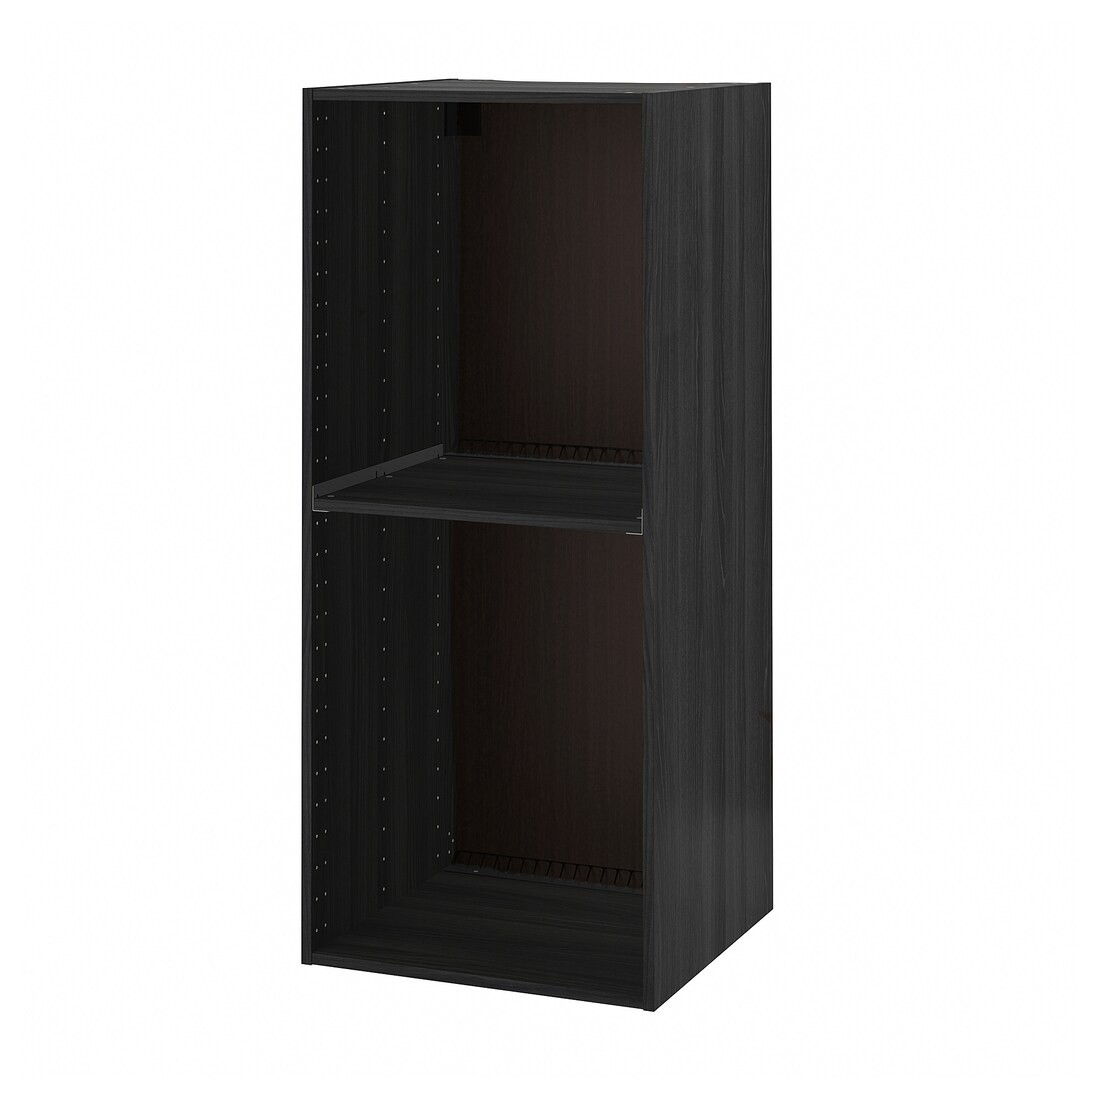 METOD МЕТОД Высокий шкаф для духовки / холодильника, имитация дерева черный, 60x60x140 см